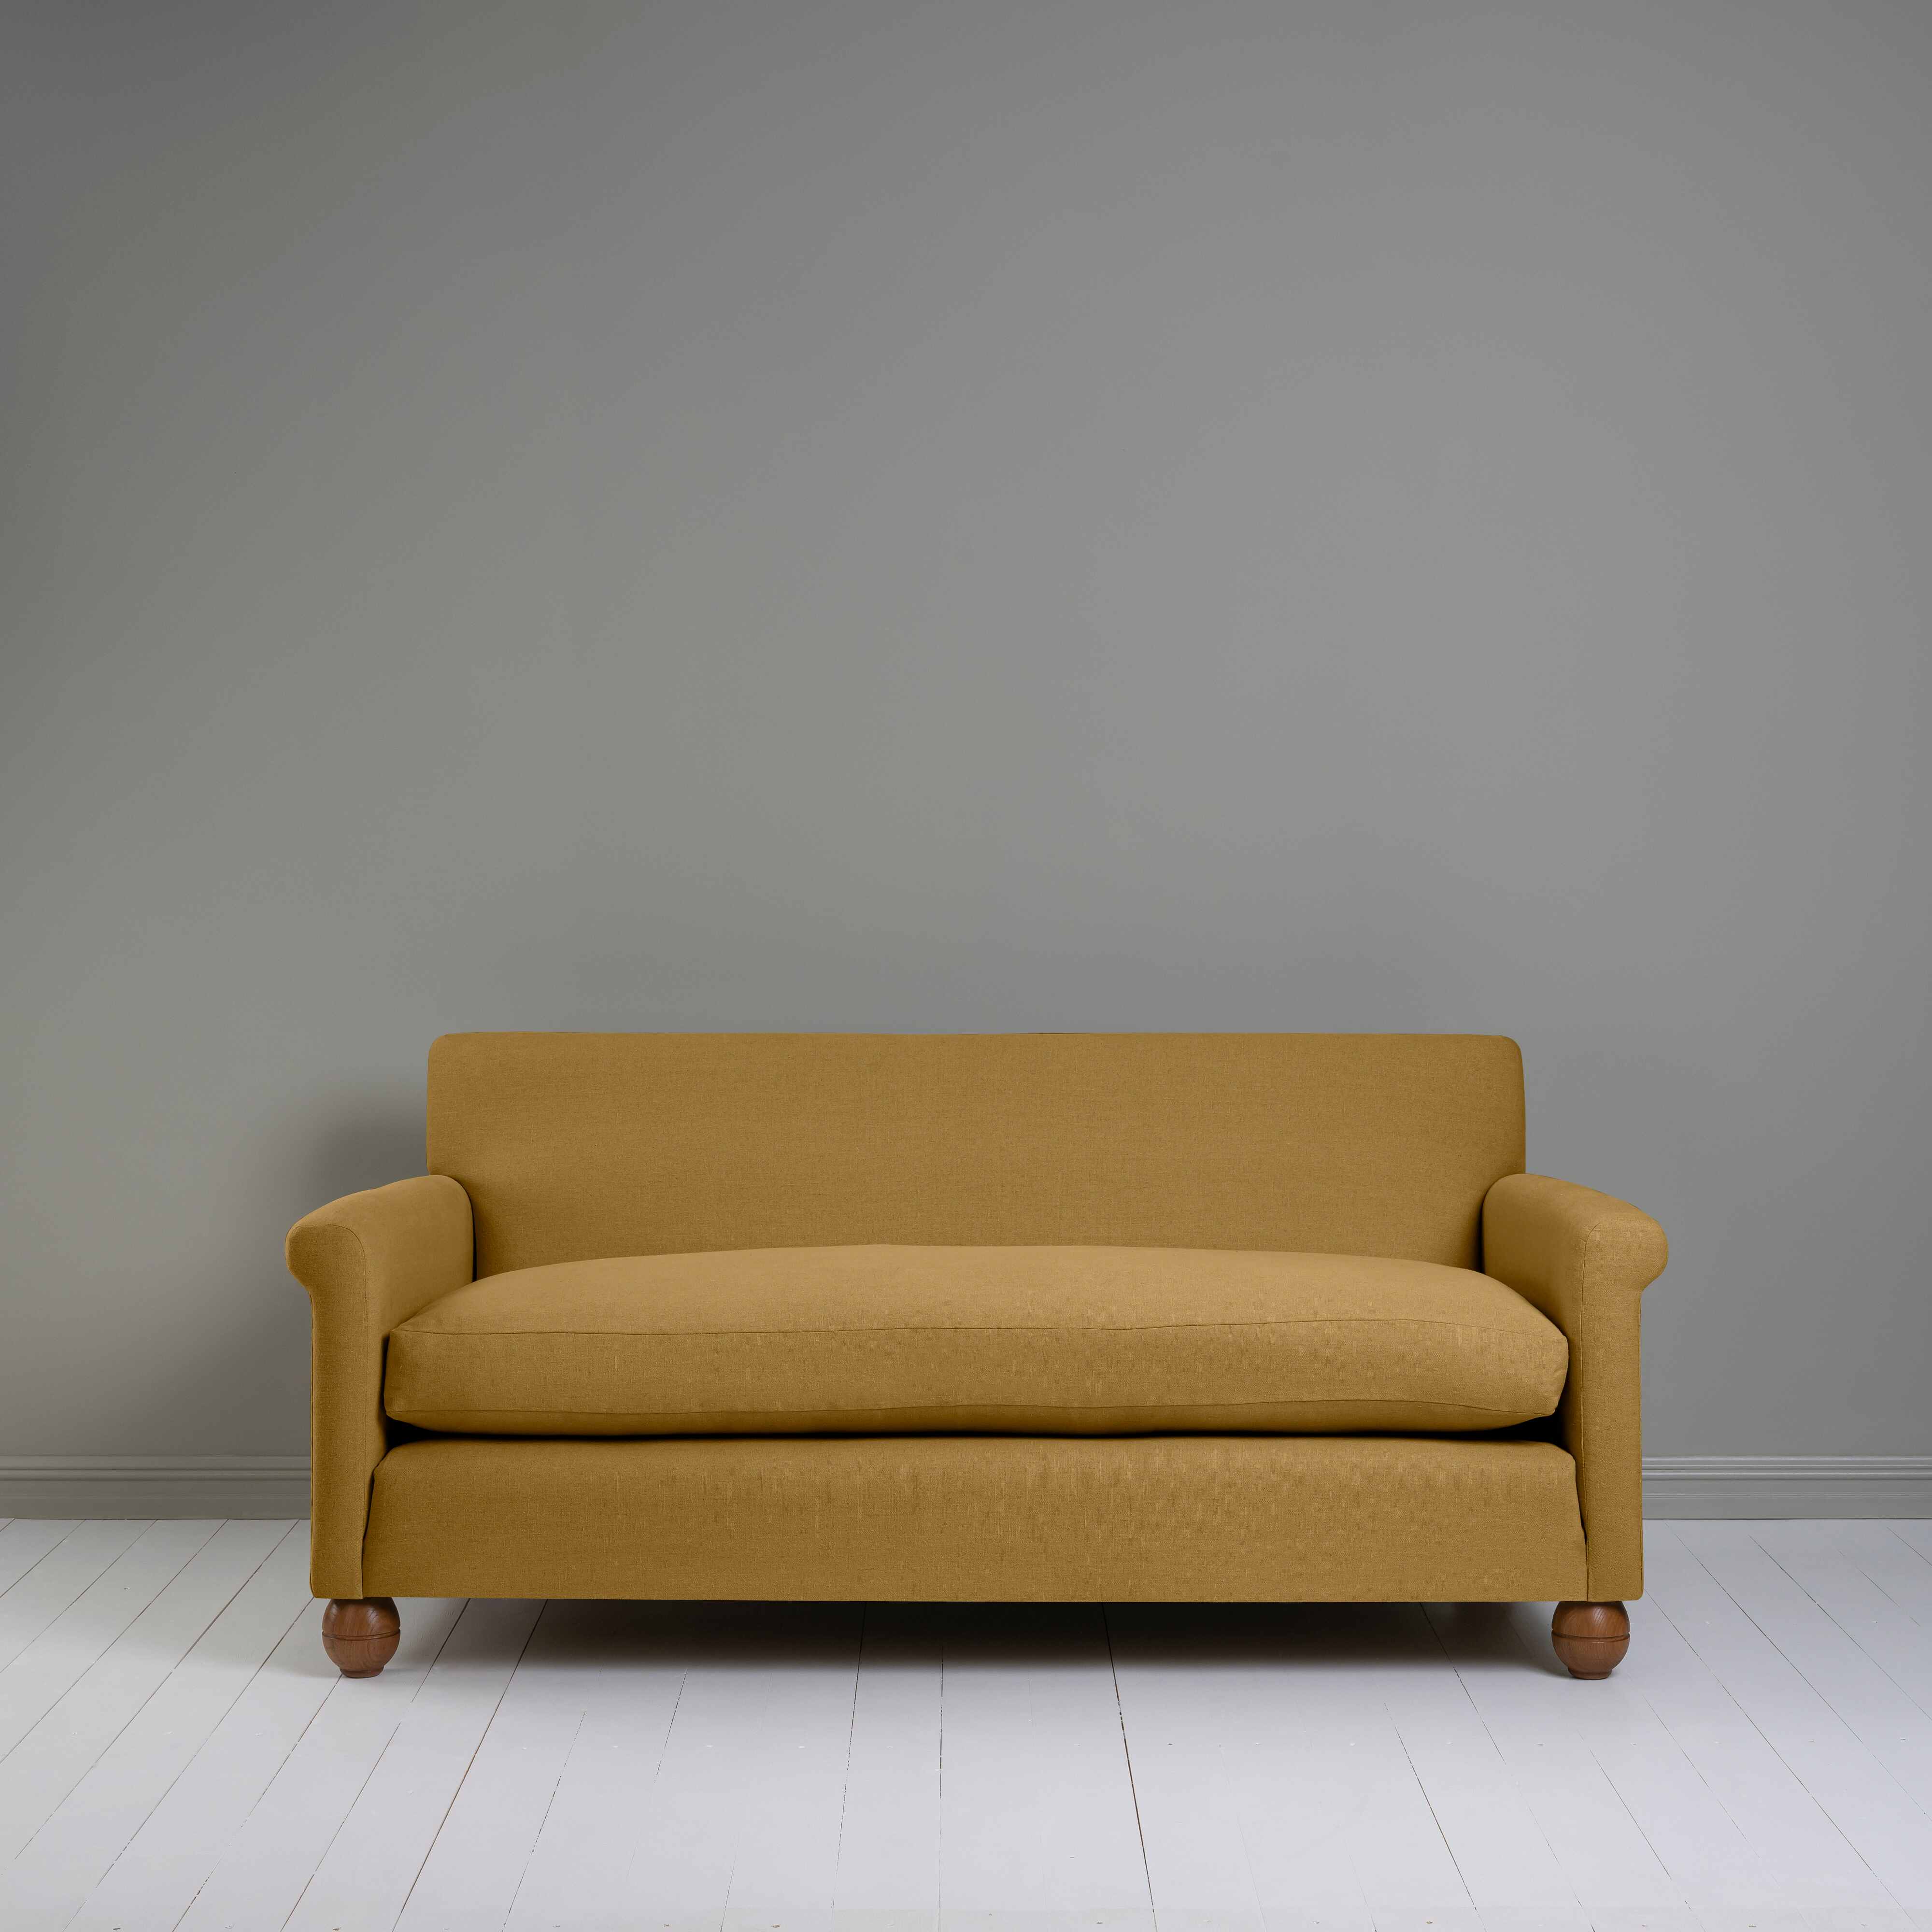  Idler 3 Seater Sofa in Laidback Linen Ochre 